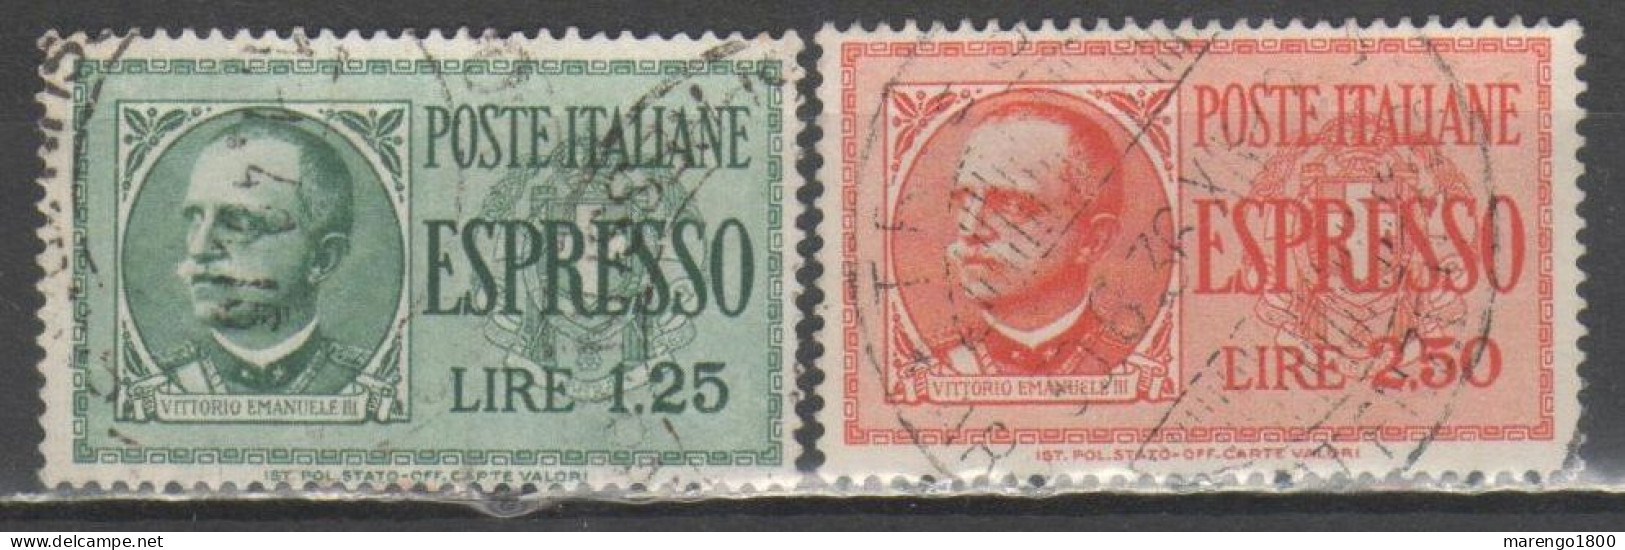 ITALIA 1932-33 - Espressi - Poste Exprèsse